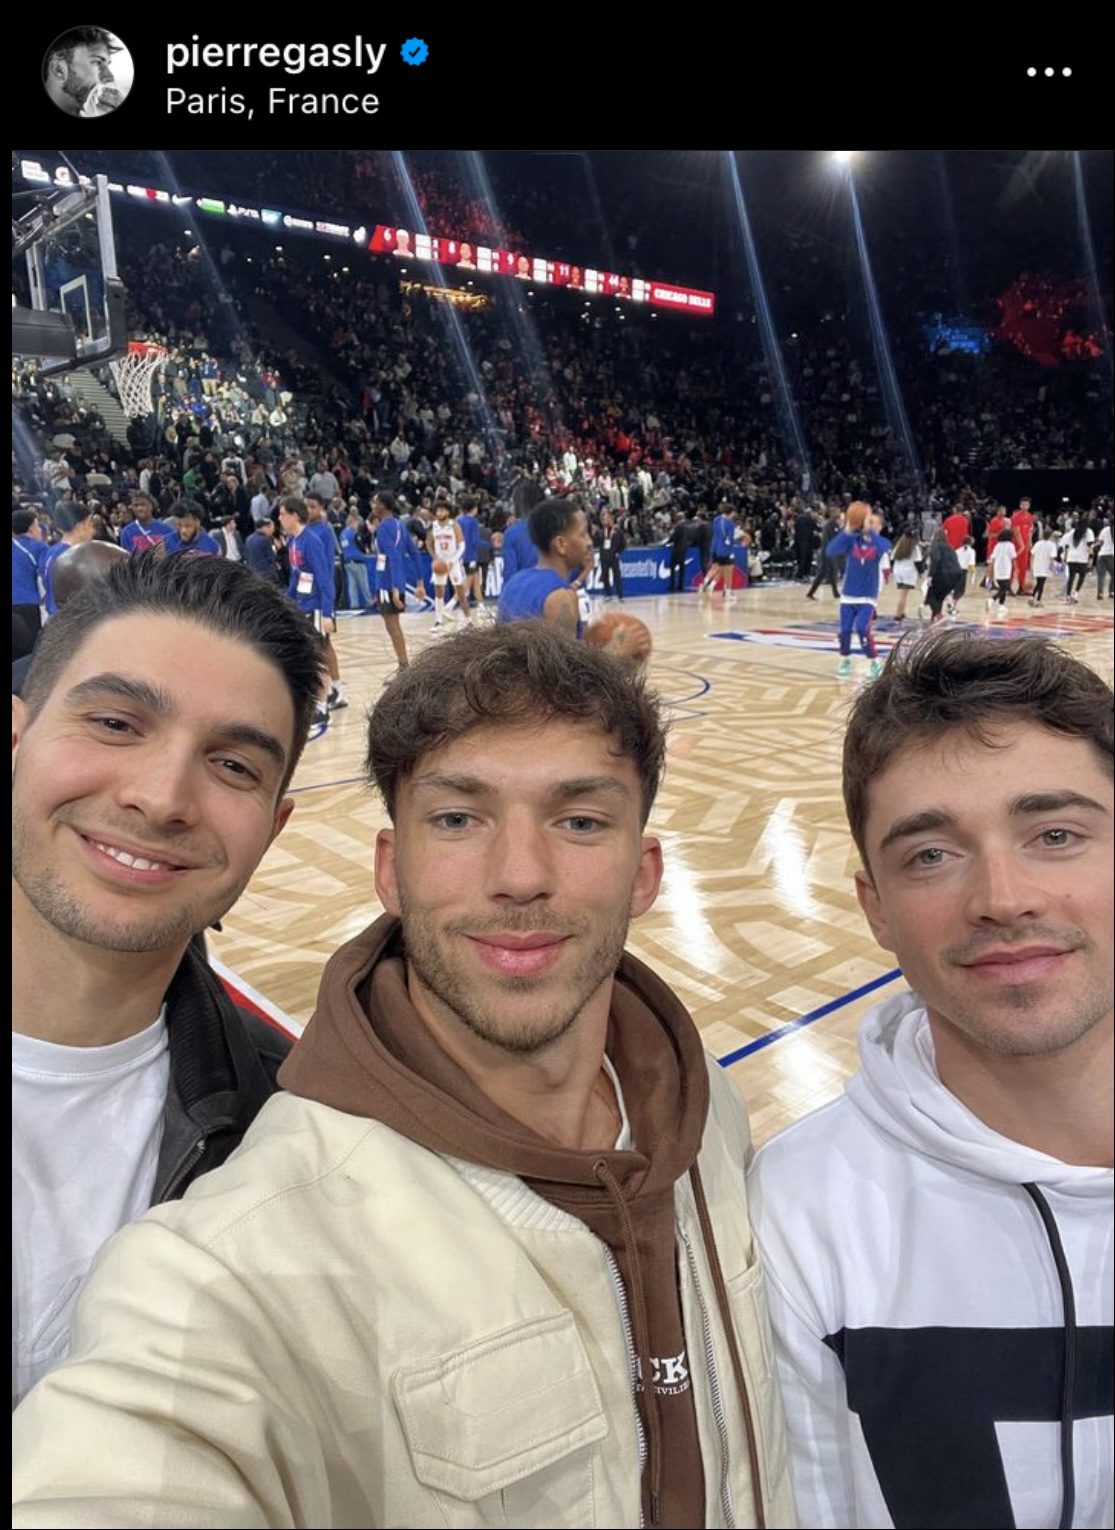 Como bons amigos, Leclerc, Ocon e Gasly assistem jogo de NBA juntos